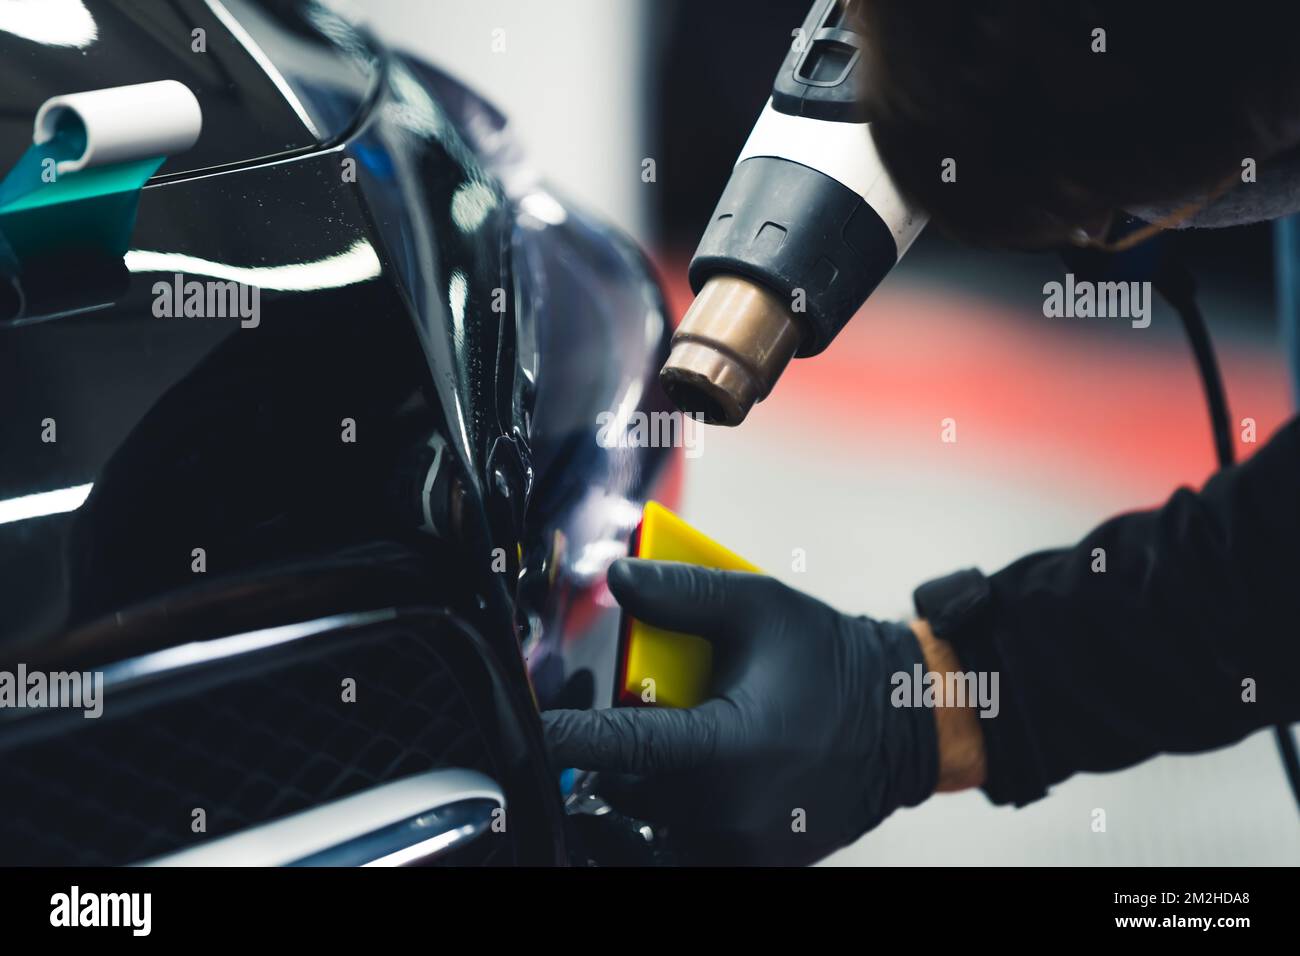 Processo di dettaglio auto - tintura di lampade per auto effettuata da un esperto in guanti protettivi con l'uso di attrezzature professionali. . Foto di alta qualità Foto Stock